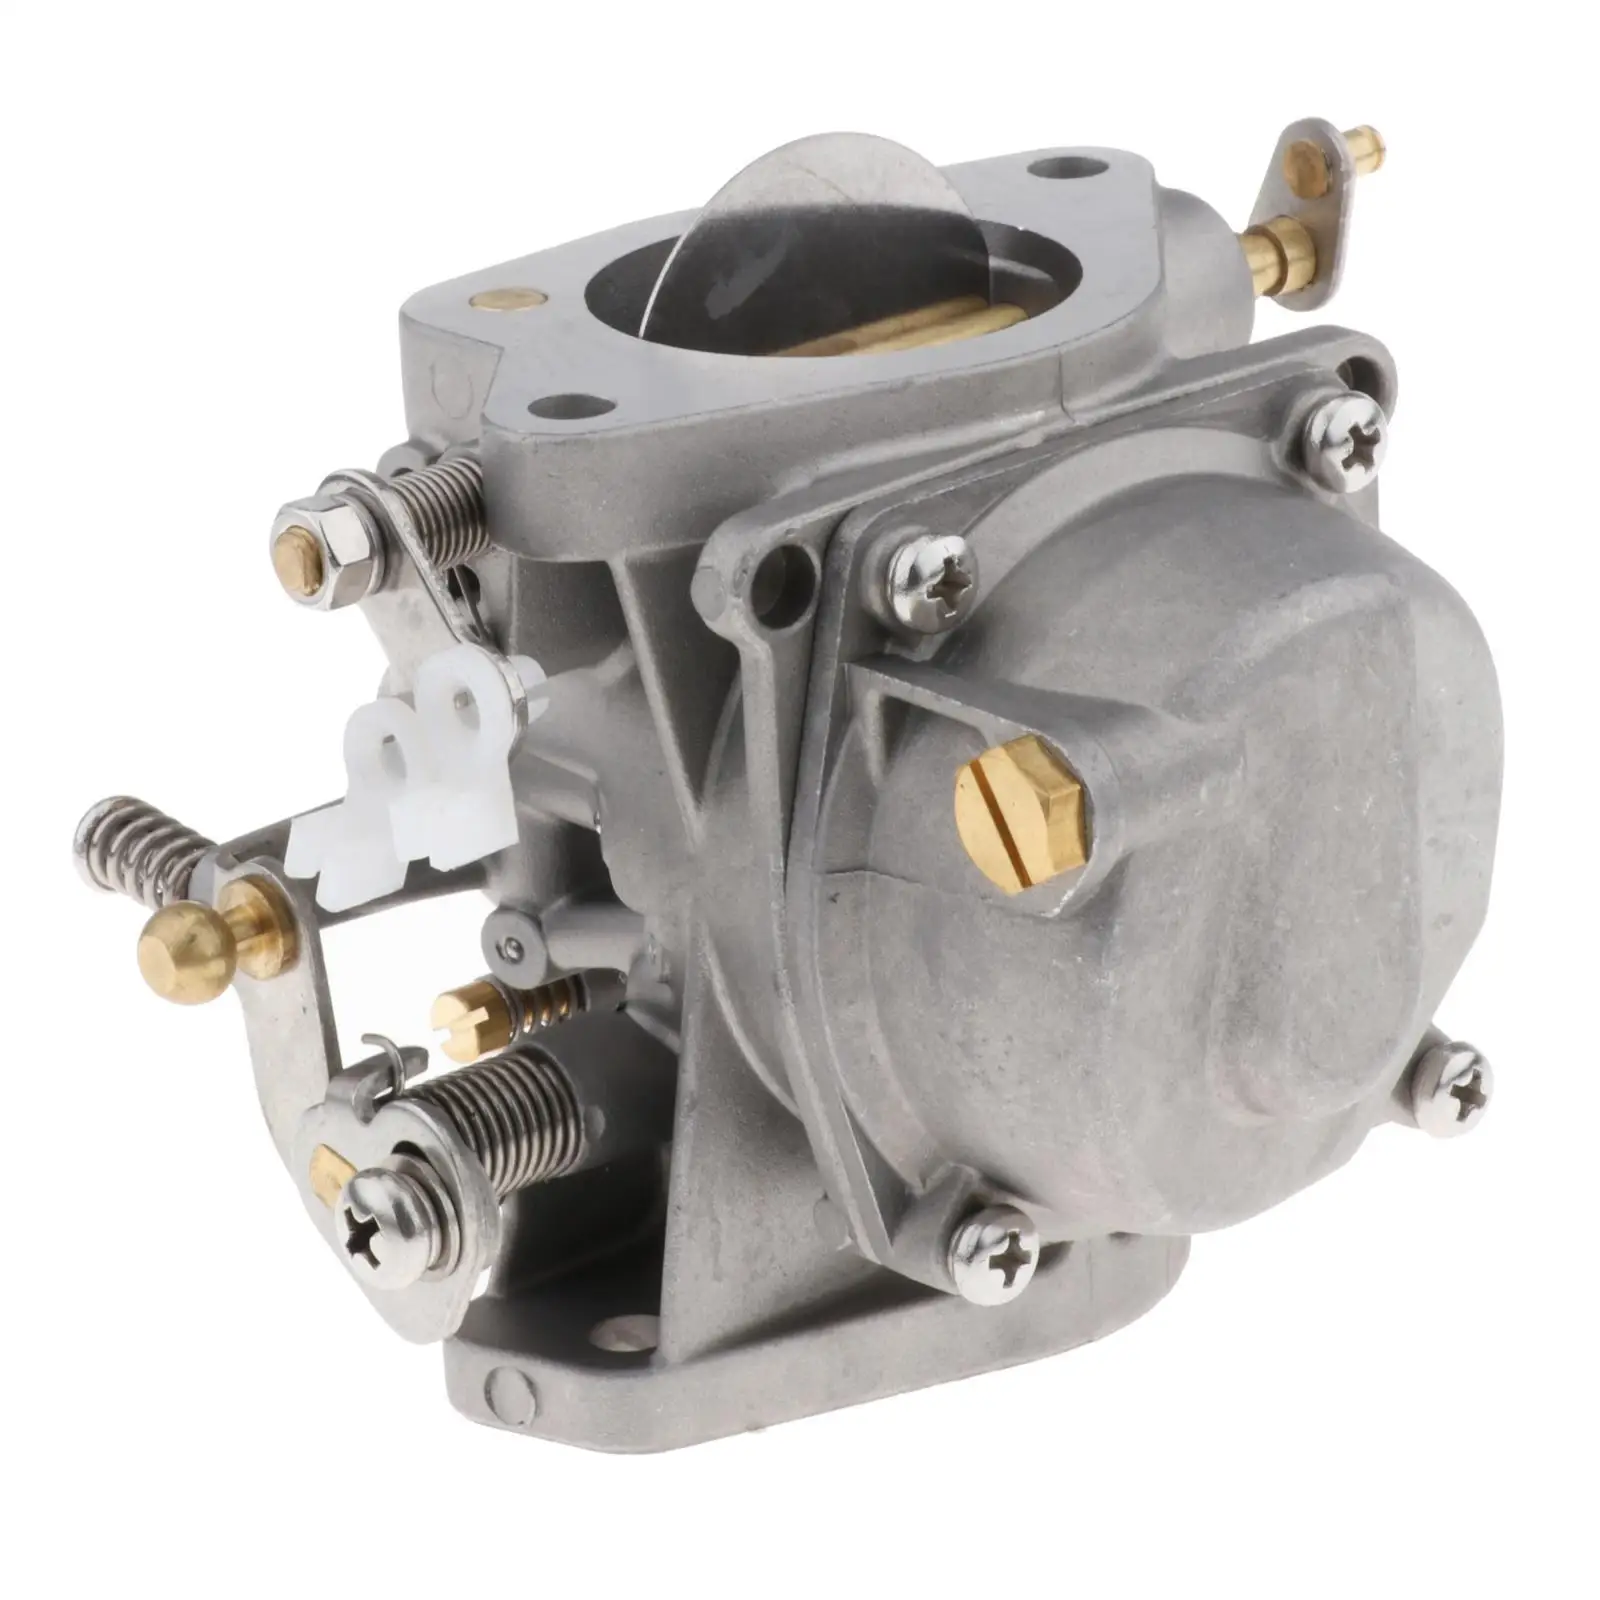 : 6K5-14301-02 6K5-14301 Middle Carburetor 80mm Portable for  Outboard Engine Aftermarket parts Stroke Marine Engine